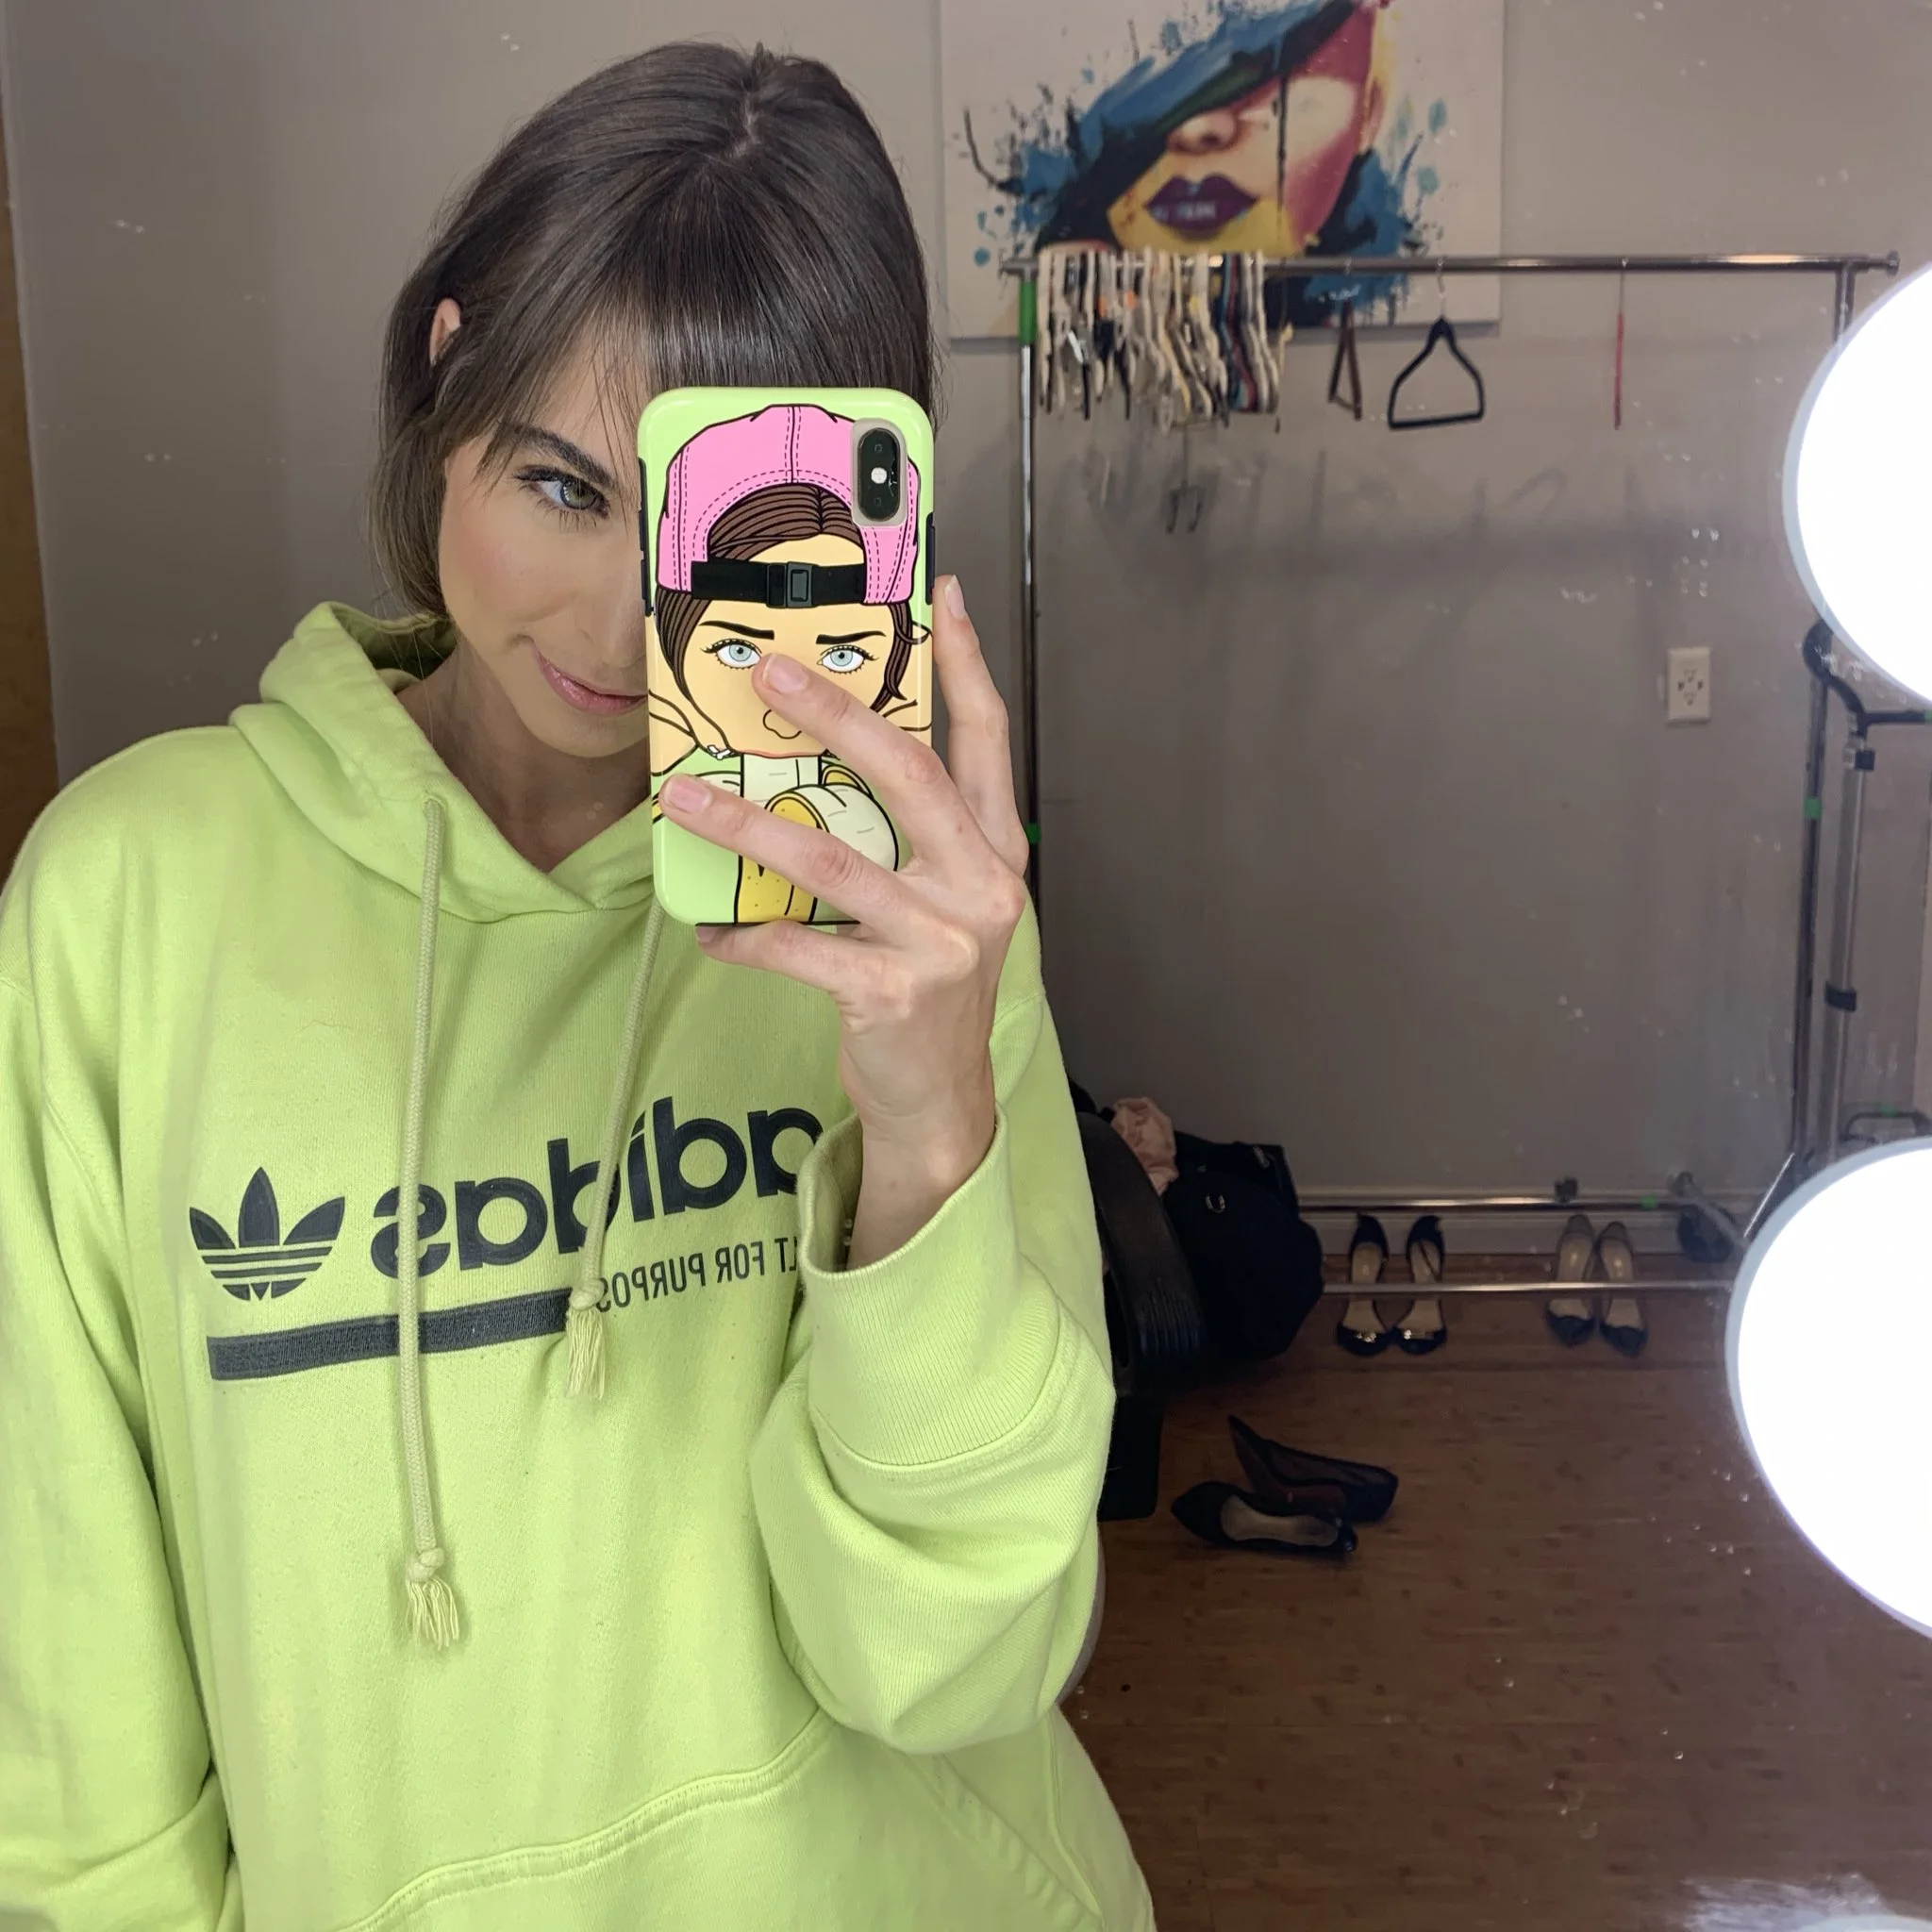 Riley (@rileyreidx3) Onlyfans model wearing a nice mint green adidas hoodie in her room